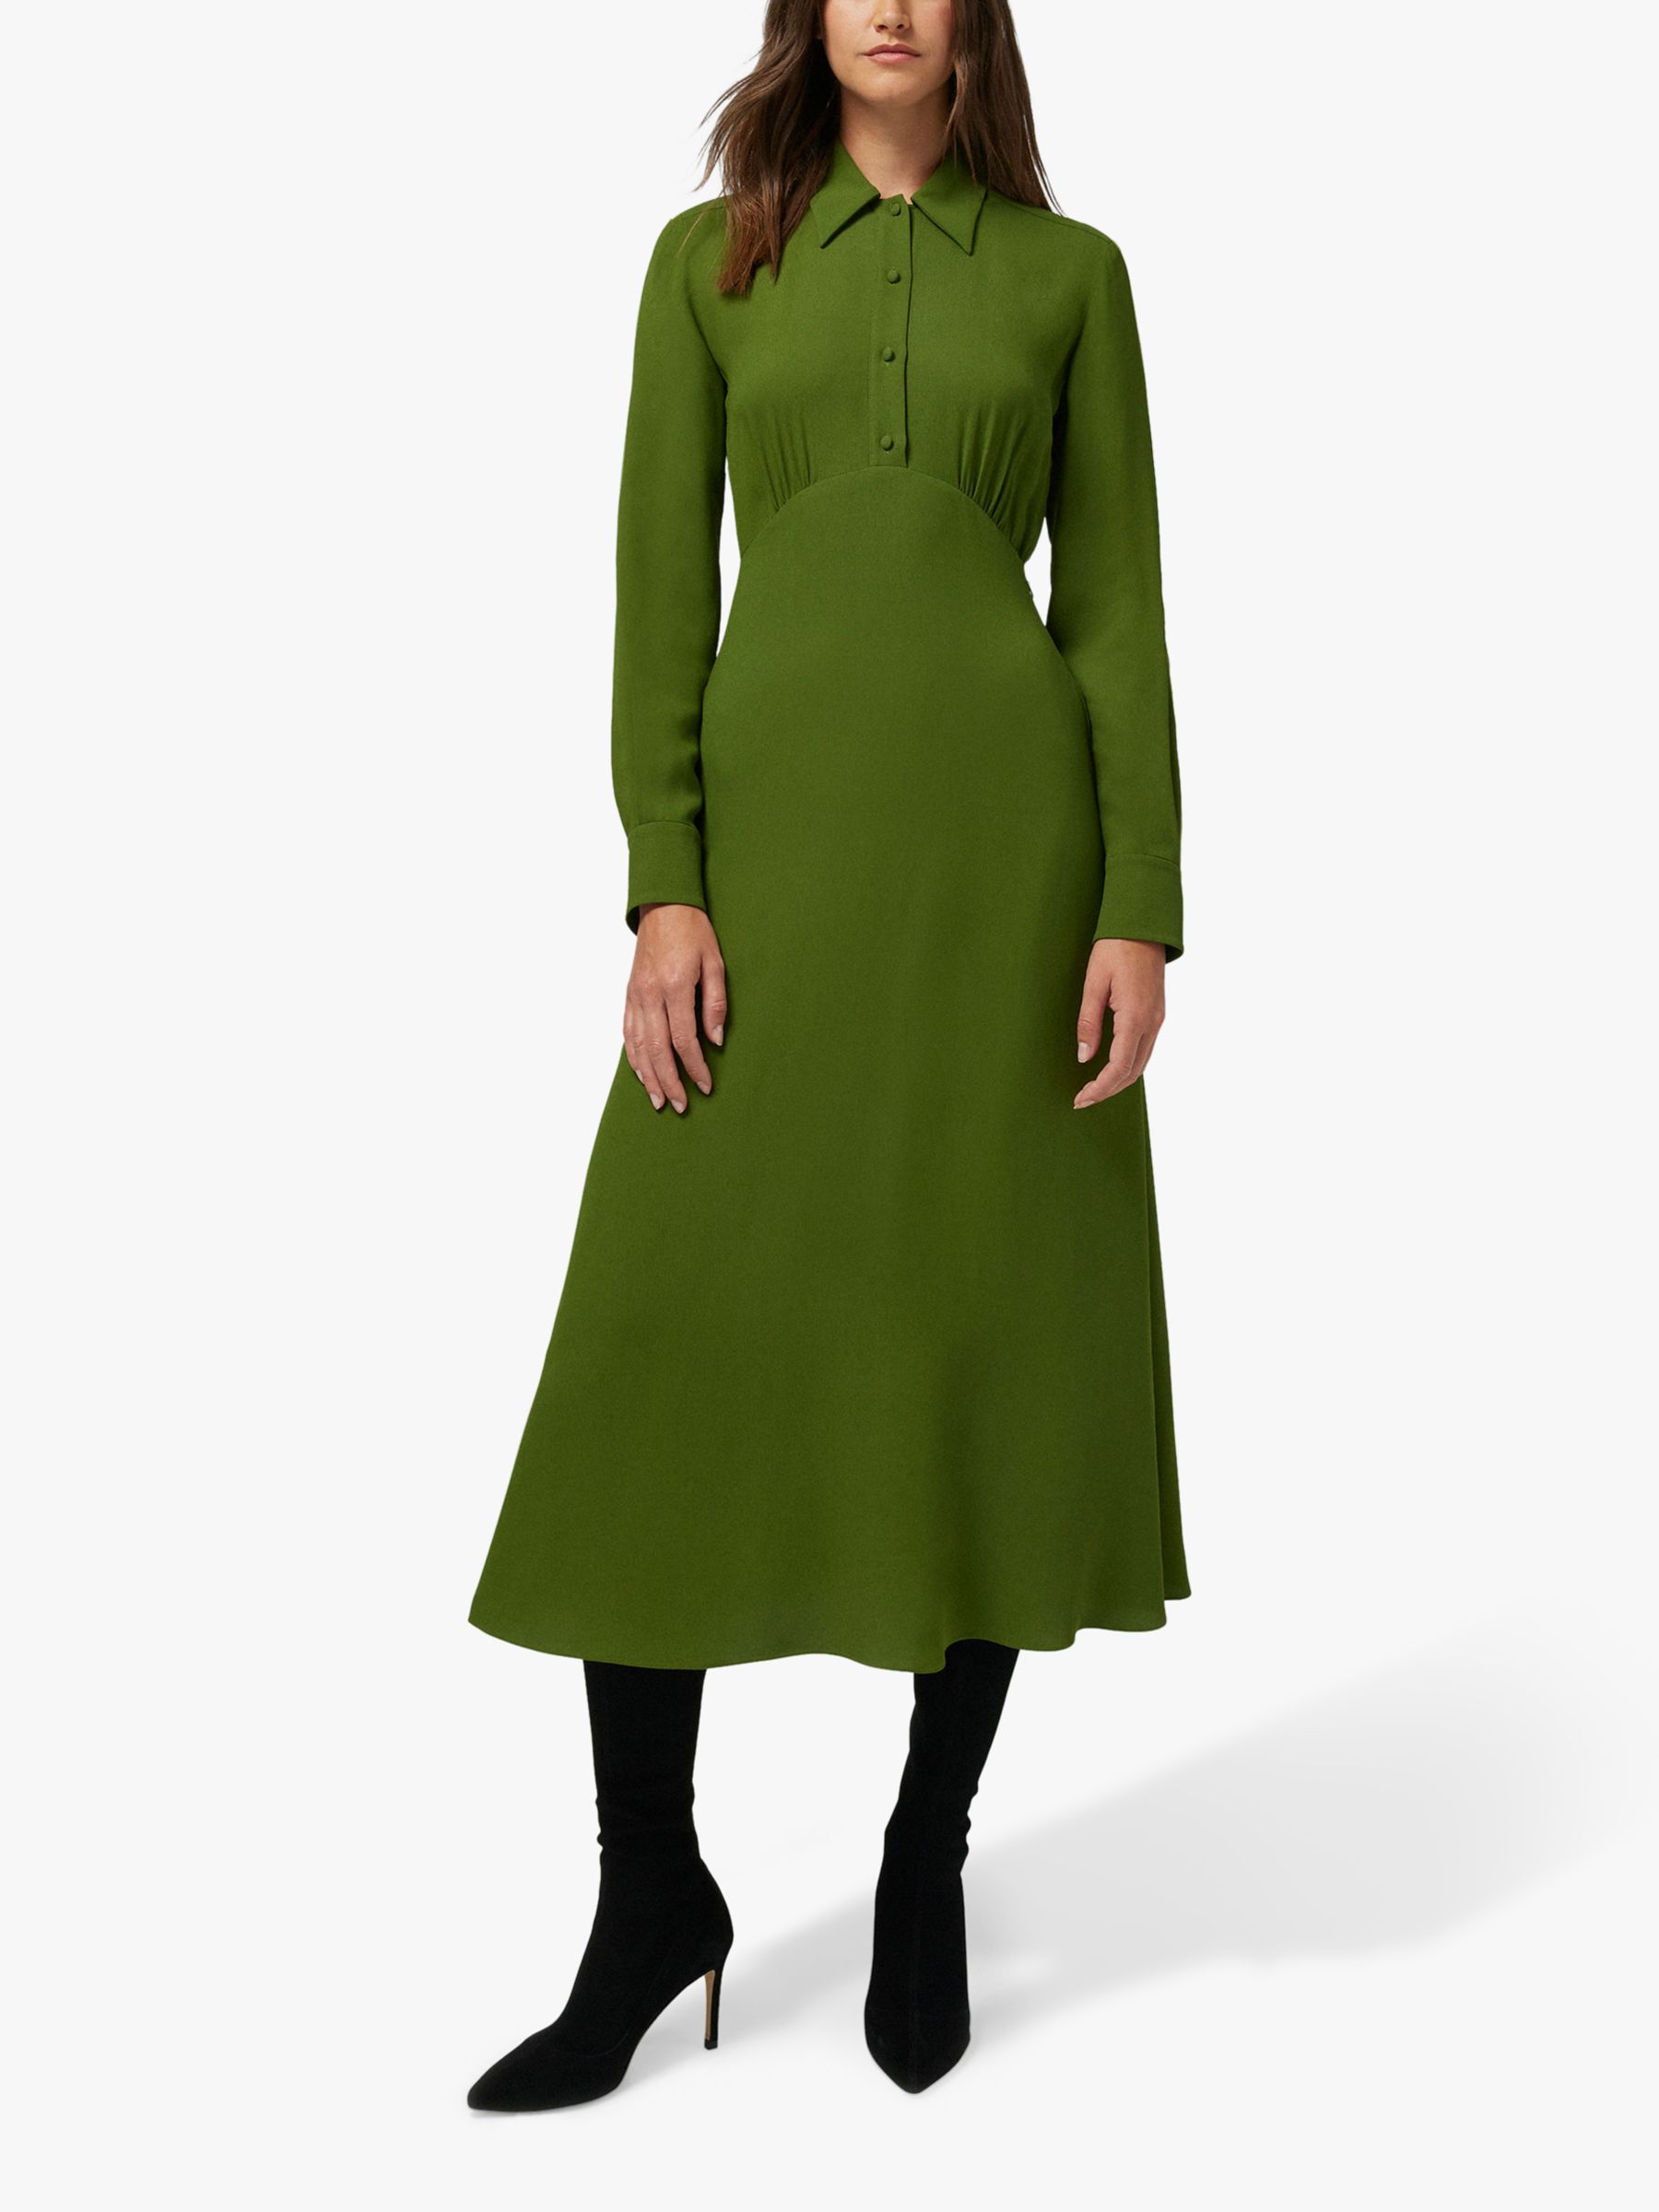 Jasper Conran Claudia Empire Line Crepe Midi Dress, Green, 12